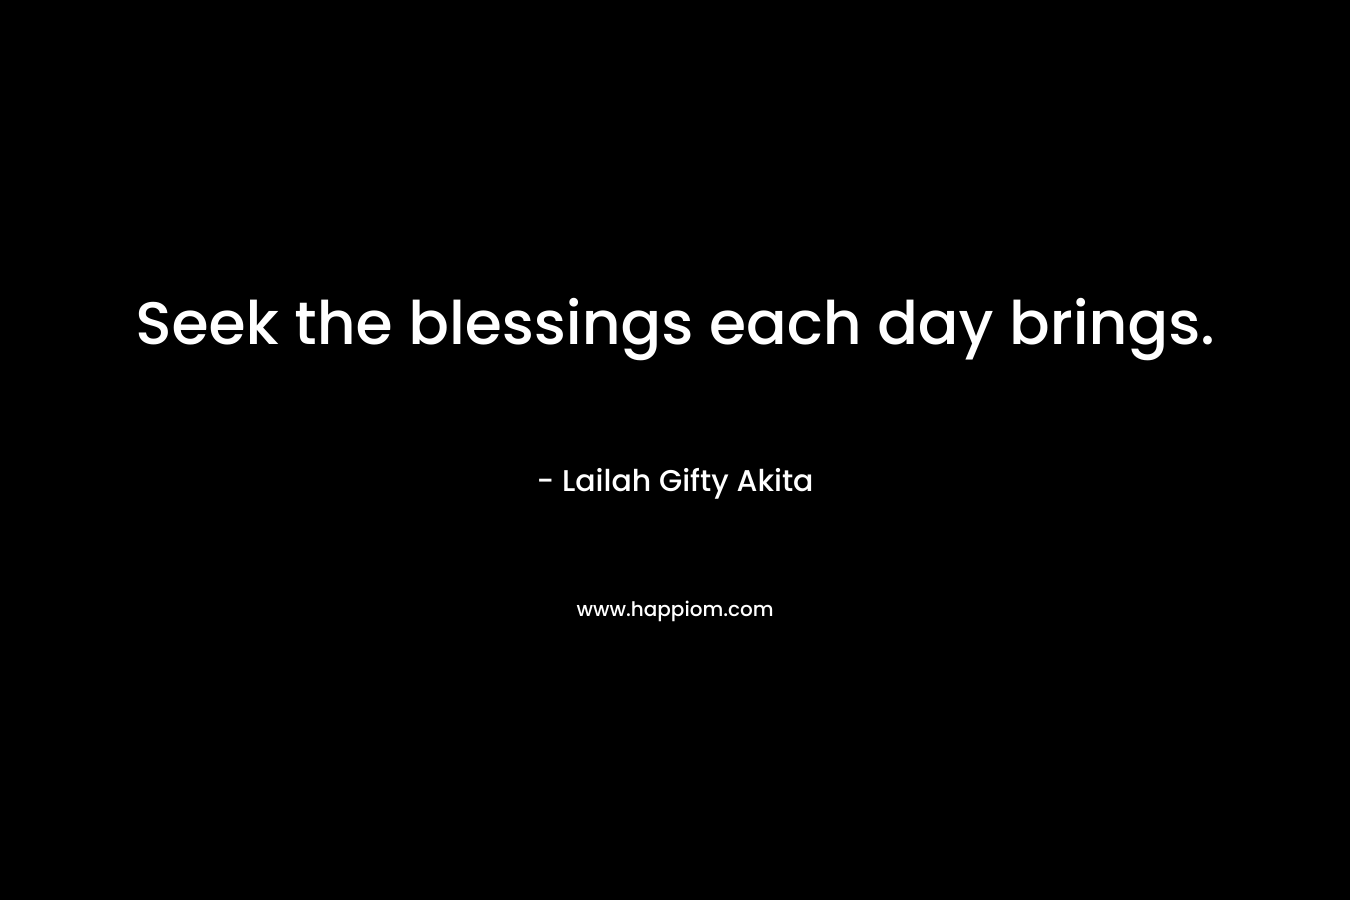 Seek the blessings each day brings.